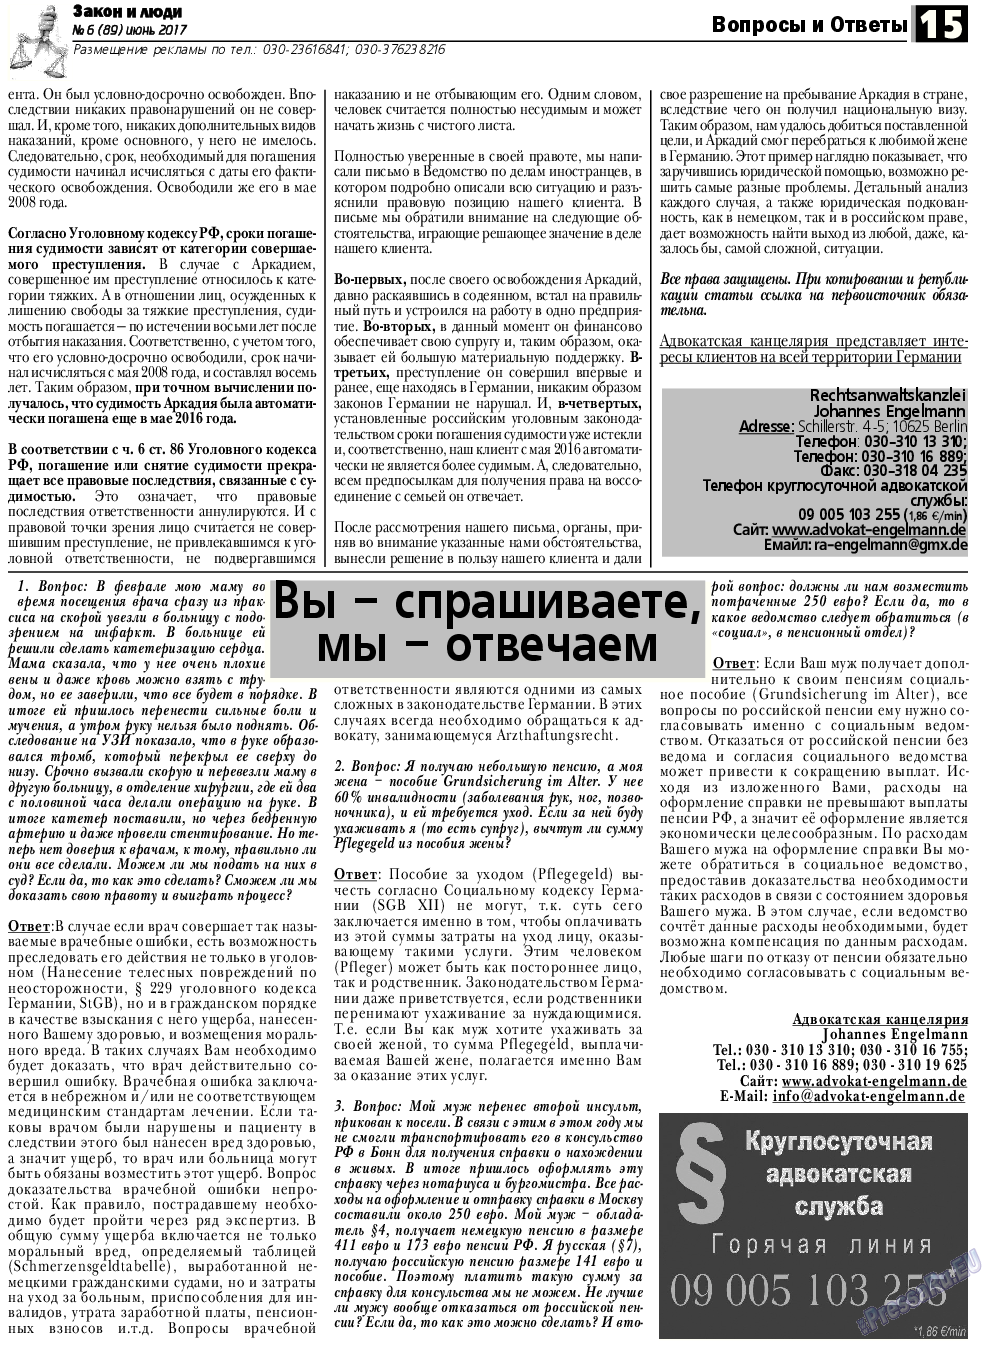 Закон и люди, газета. 2017 №6 стр.15